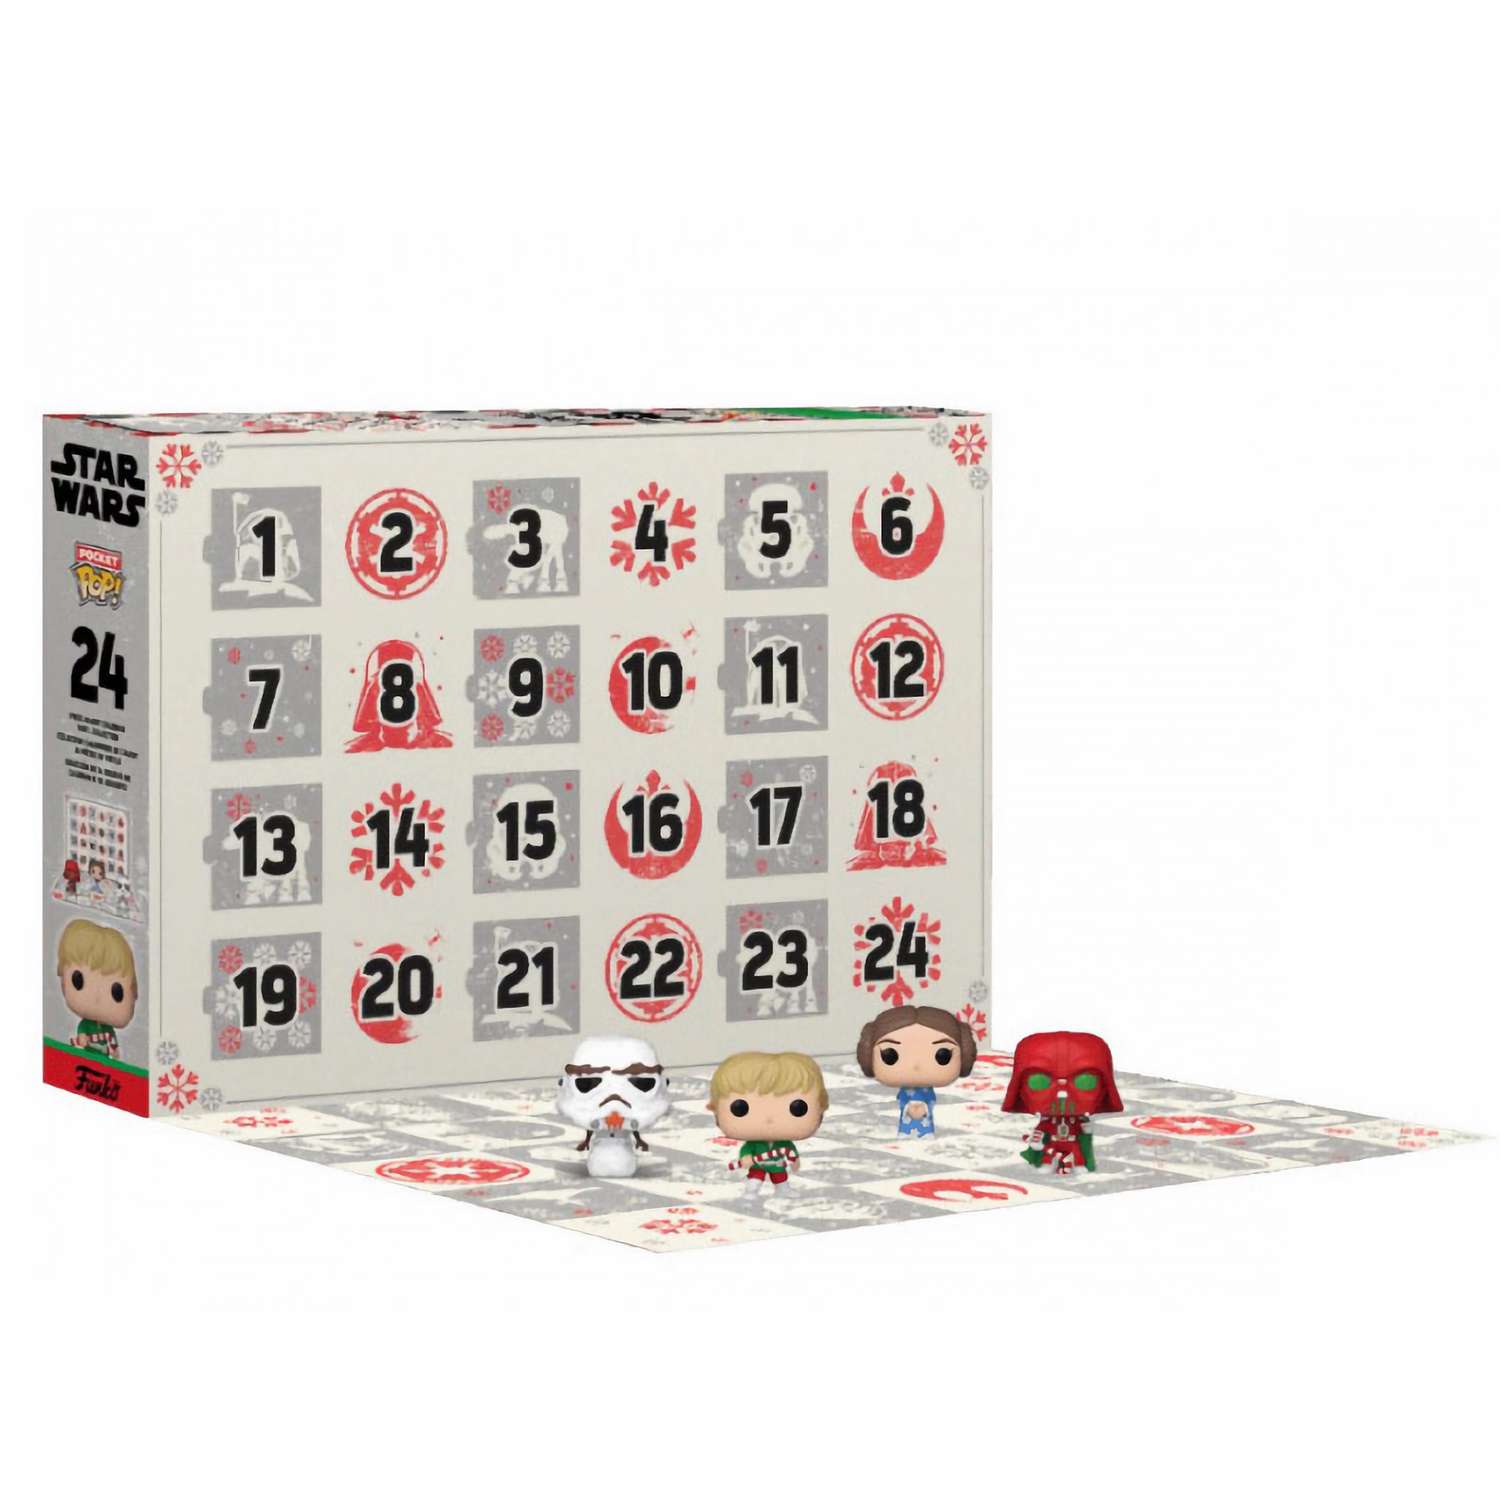 Подарочный набор Funko POP! Адвент календарь Advent Calendar Star Wars из фильма Звездные войны - фото 2